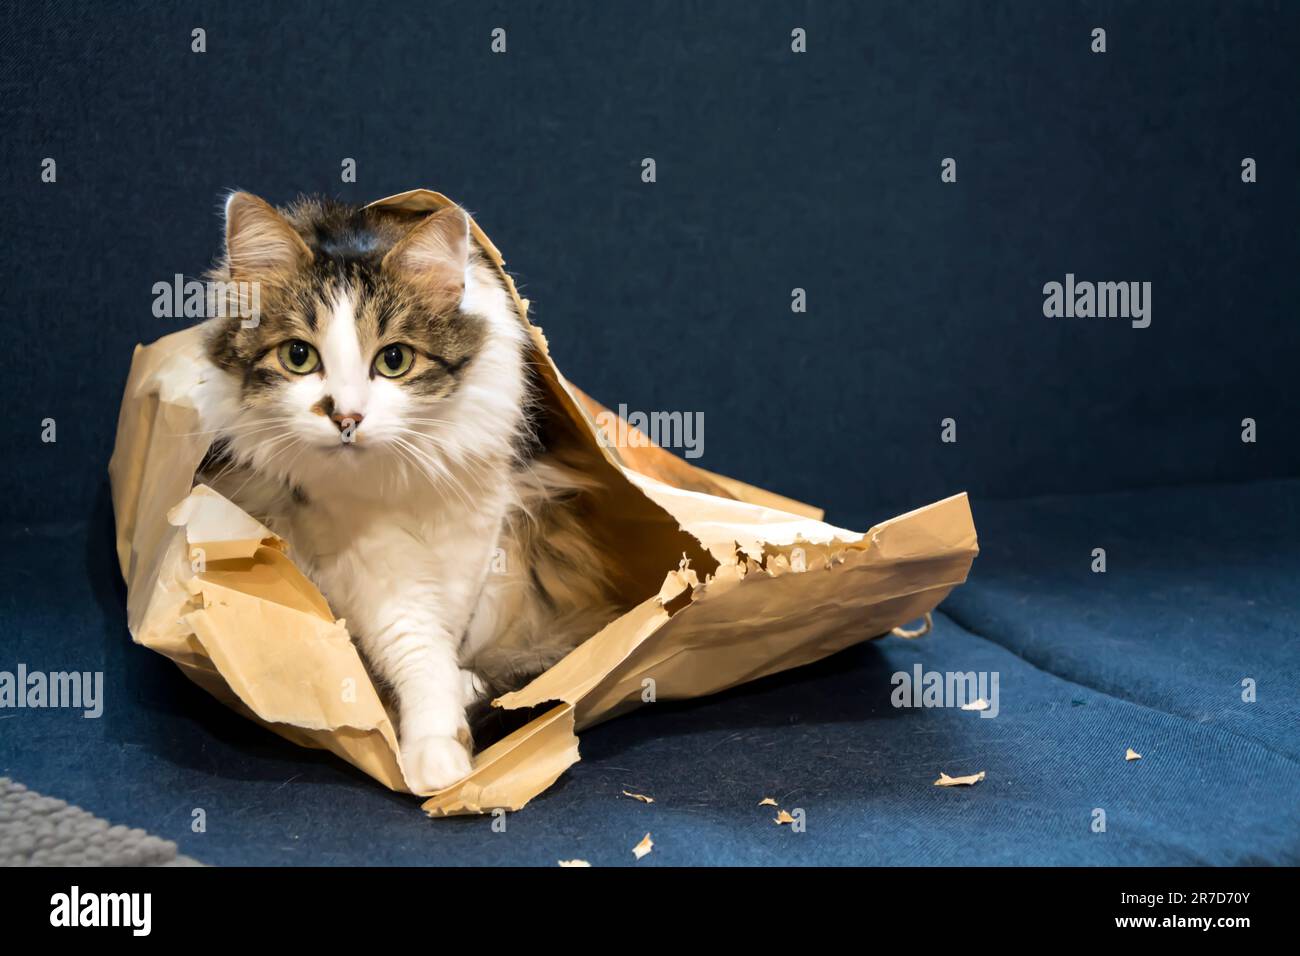 Un beau chat domestique en tabby avec de longues fourrures et des yeux verts assis dans un sac en papier déchiré sur un canapé bleu foncé et regardant l'appareil photo. Horizonta Banque D'Images